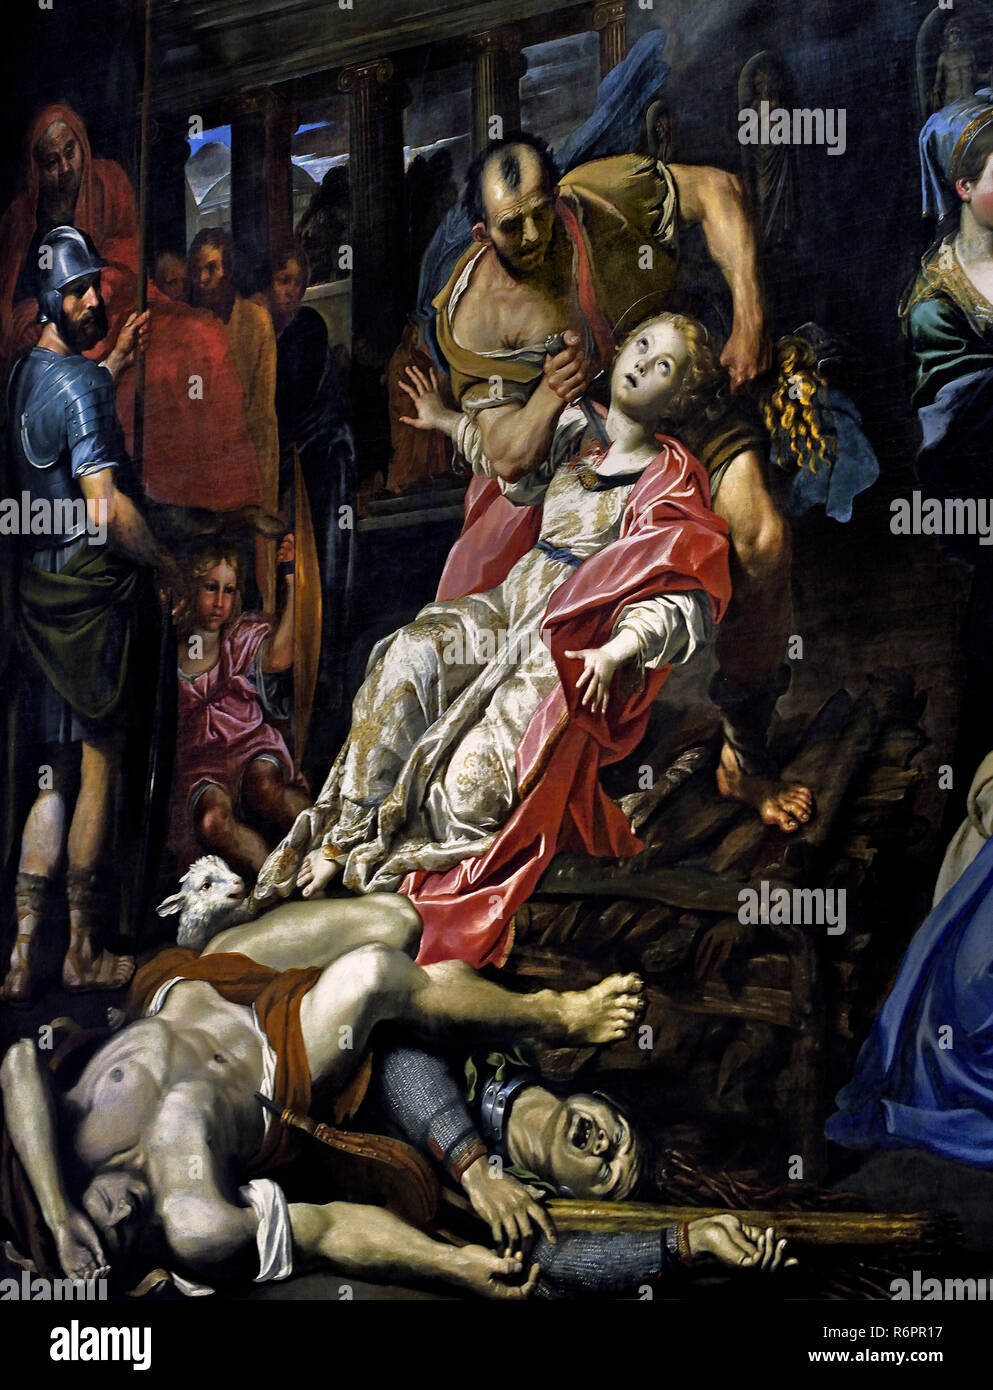 Das Martyrium der Hl. Agnes von Domenico Zampieri sagte, die Panizza 1581-1641 (der sehr jungen Märtyrer beschrieben wird, stirbt sie in der Kehle auf Befehl des Aspasio durchbohrt, Vikar des Präfekten, dessen Sohn abgelehnt worden war, die von Agnese bereits auf die Keuschheit gewidmet.) aus dem 17. Jahrhundert, Italien, Italienisch. Stockfoto